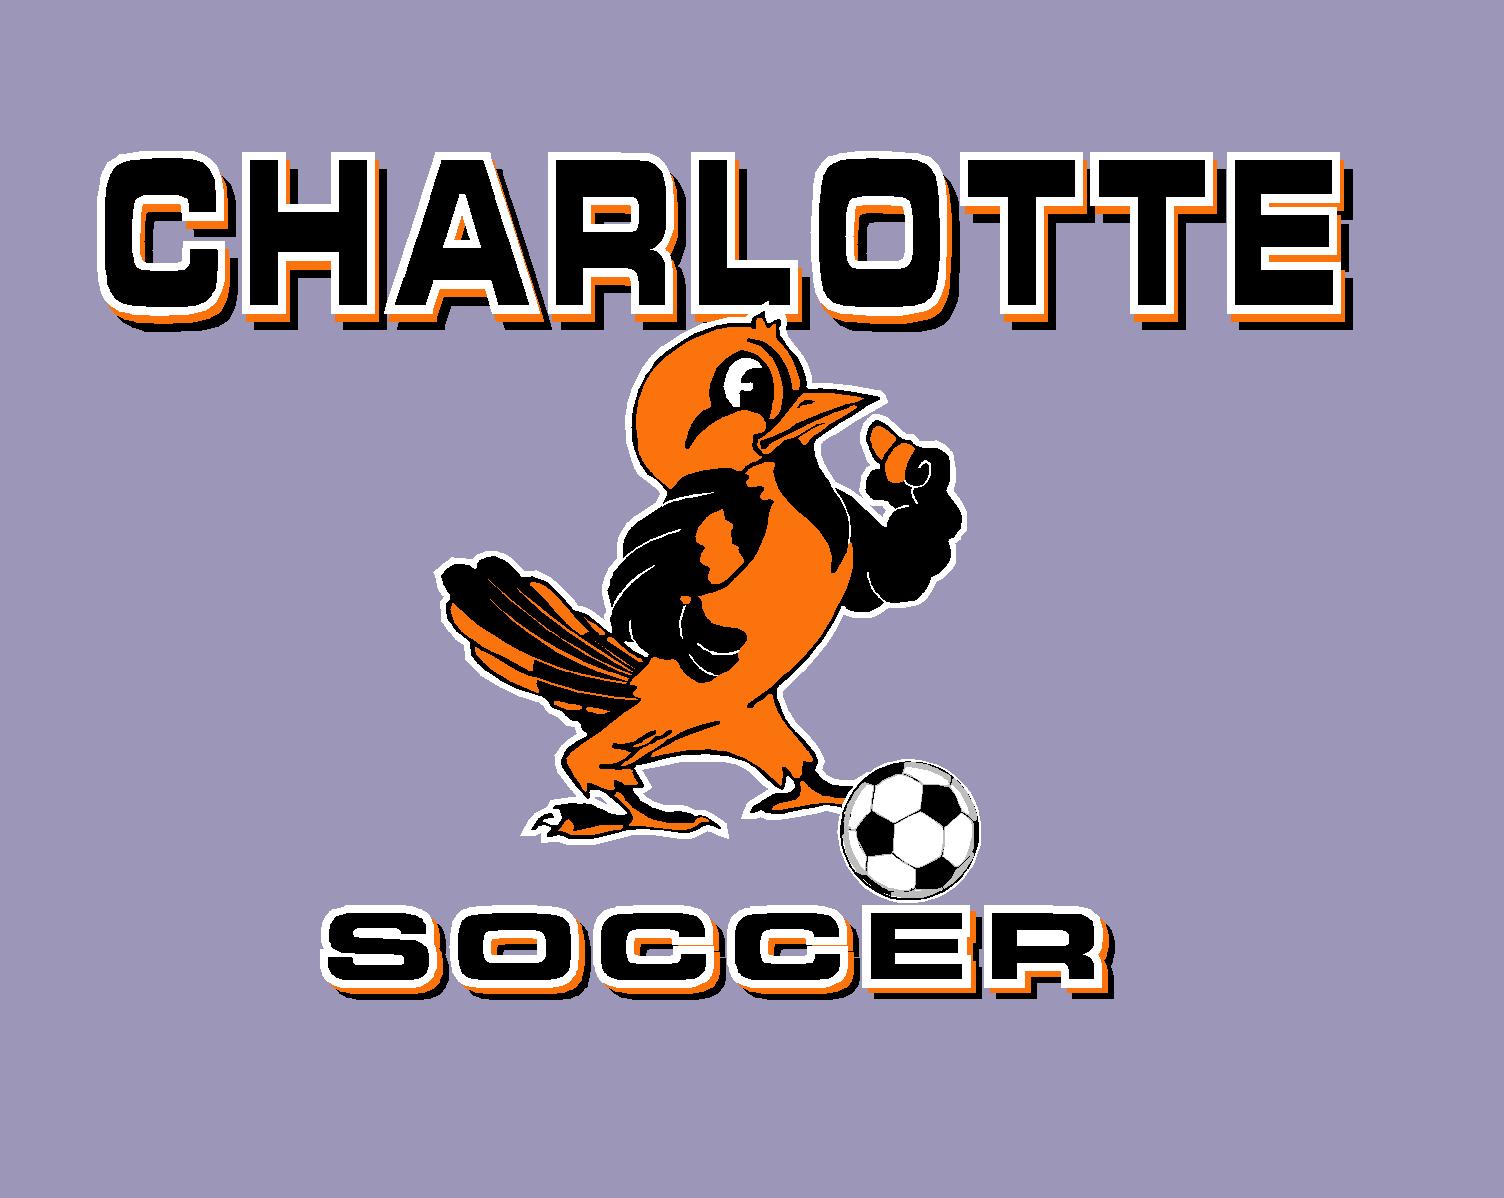  Charlotte soccer 